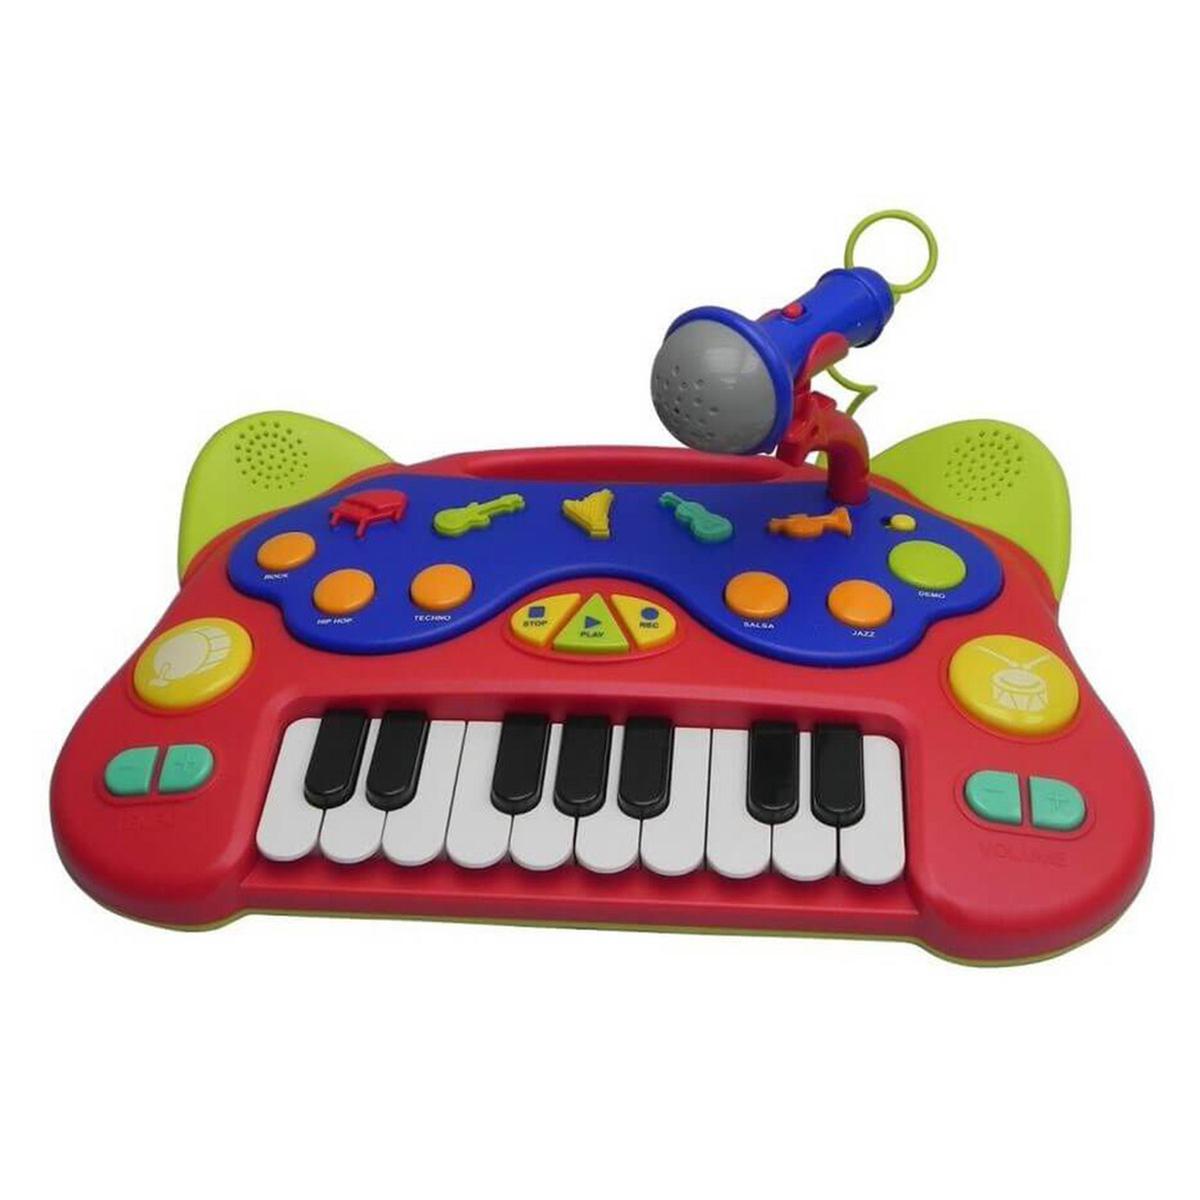 Teclado musical infantil con micrófono | Bruin Música | Toys"R"Us España